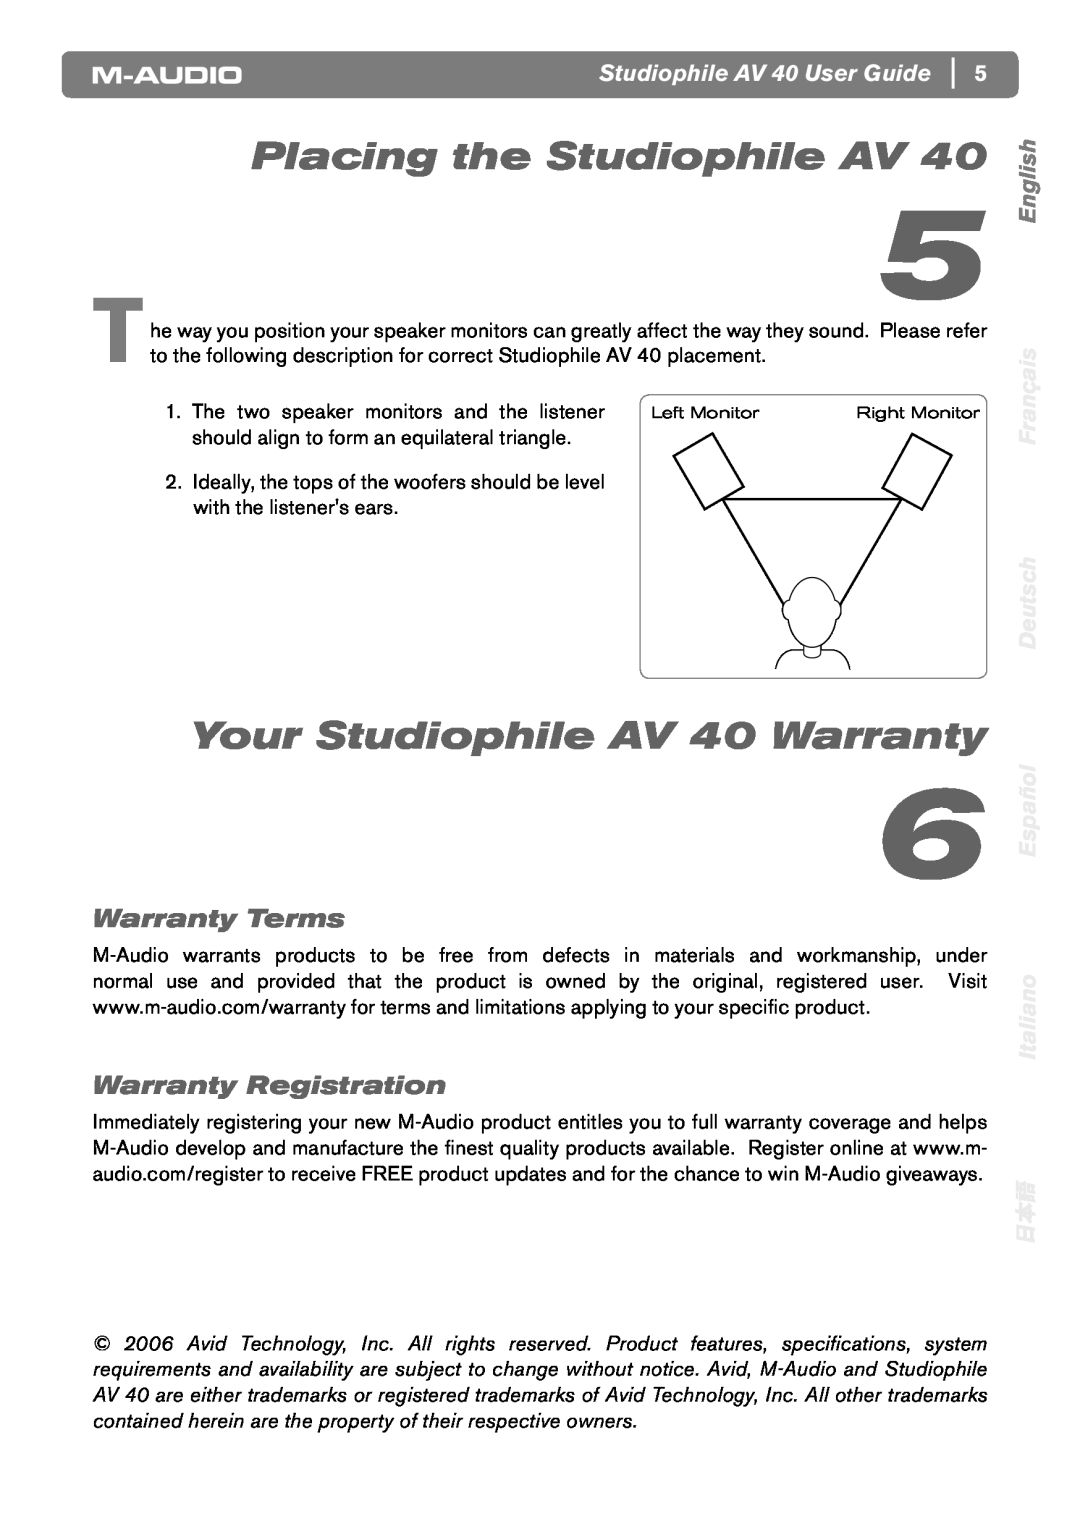 M-Audio AV40 Placing the Studiophile AV, Your Studiophile AV 40 Warranty, Warranty Terms, Warranty Registration, English 